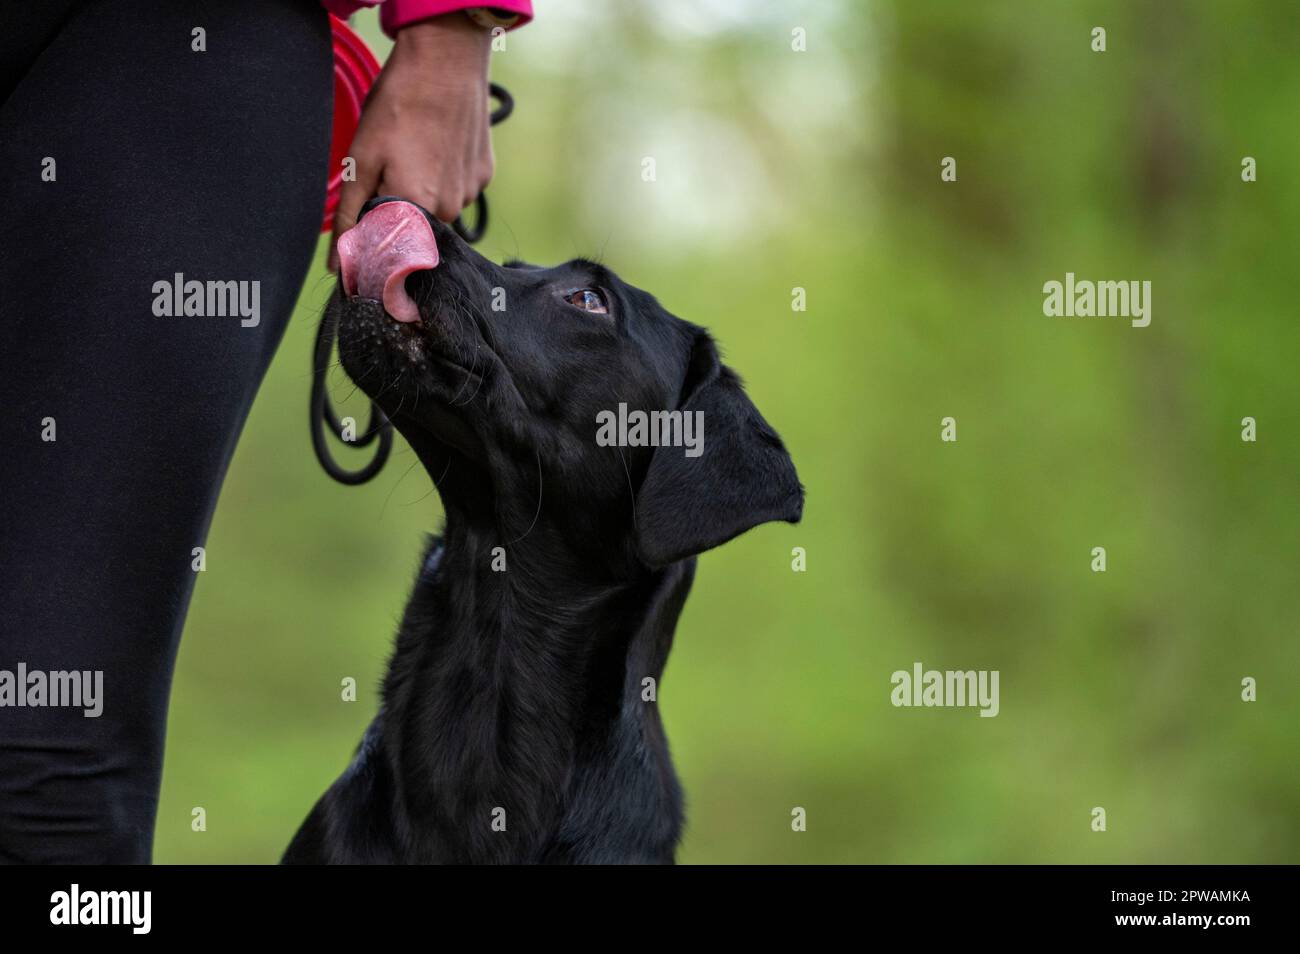 Closeuo-Blick auf den wunderschönen reinrassigen, schwarzen labrador Retriever Hund, der neben ihrem Besitzer sitzt, aufblickt und sich den Mund leckt, in der Erwartung einer Leckerei. Stockfoto